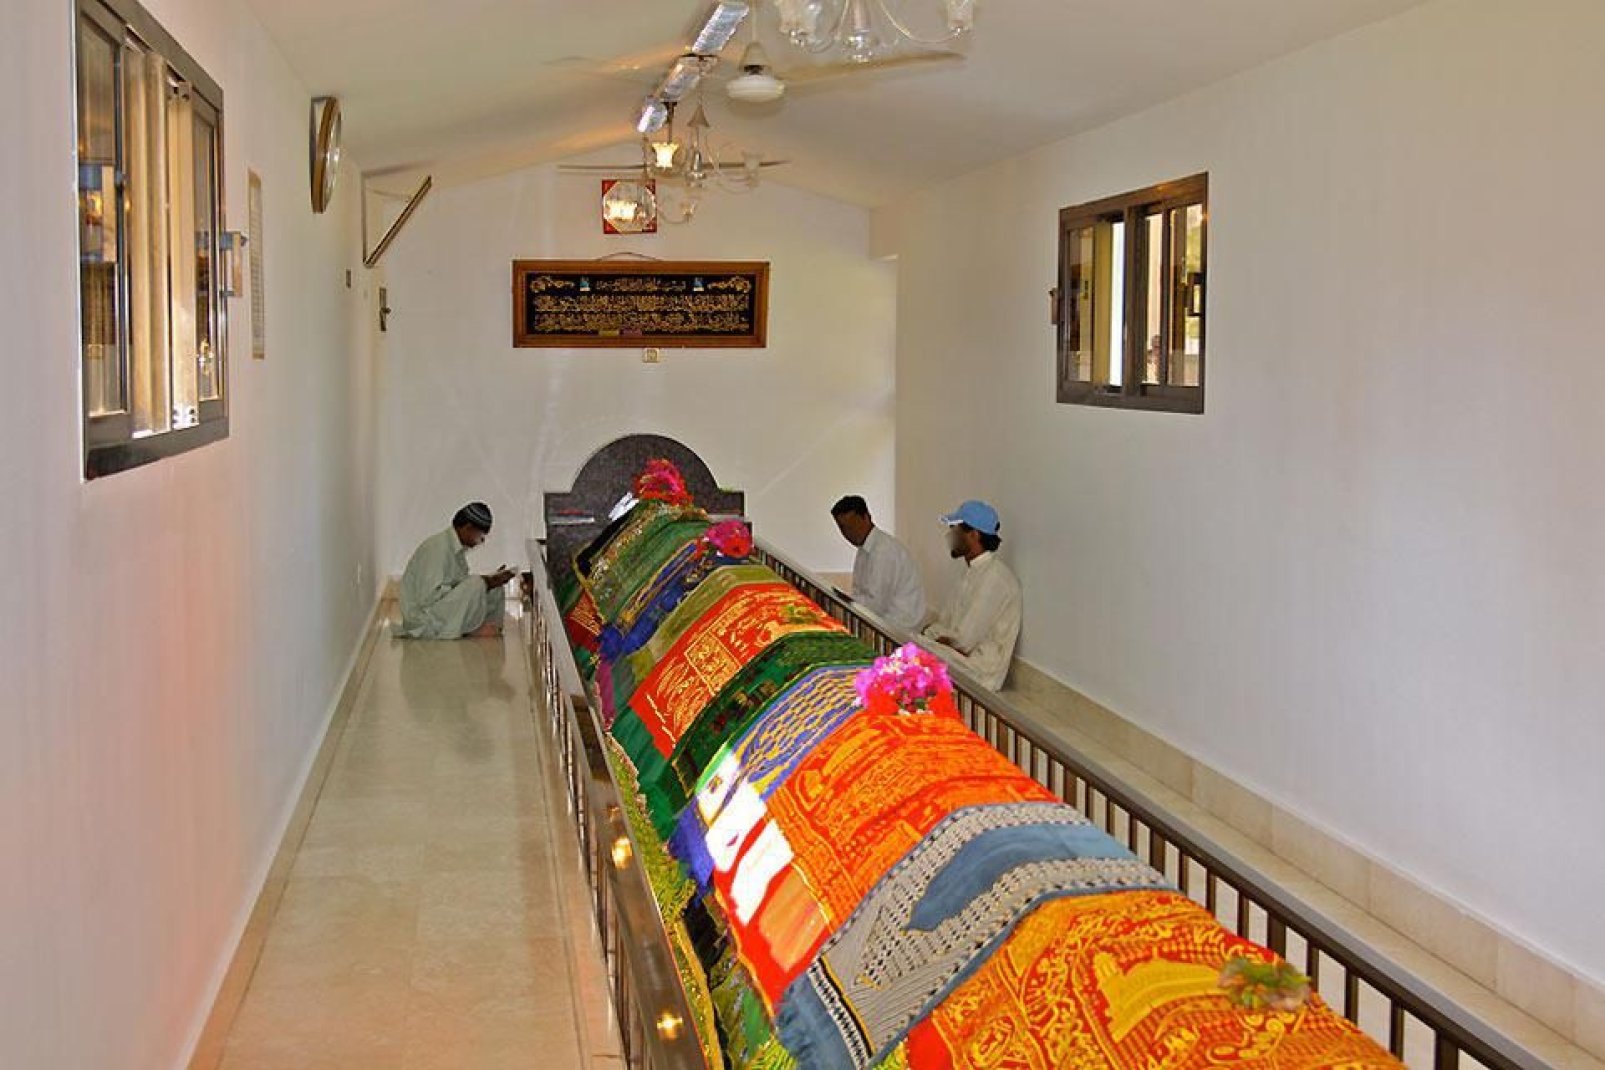 Este lugar, 8 metros de largo recubiertos por una alfombra, es sagrado para los habitantes que vienen a rezar.